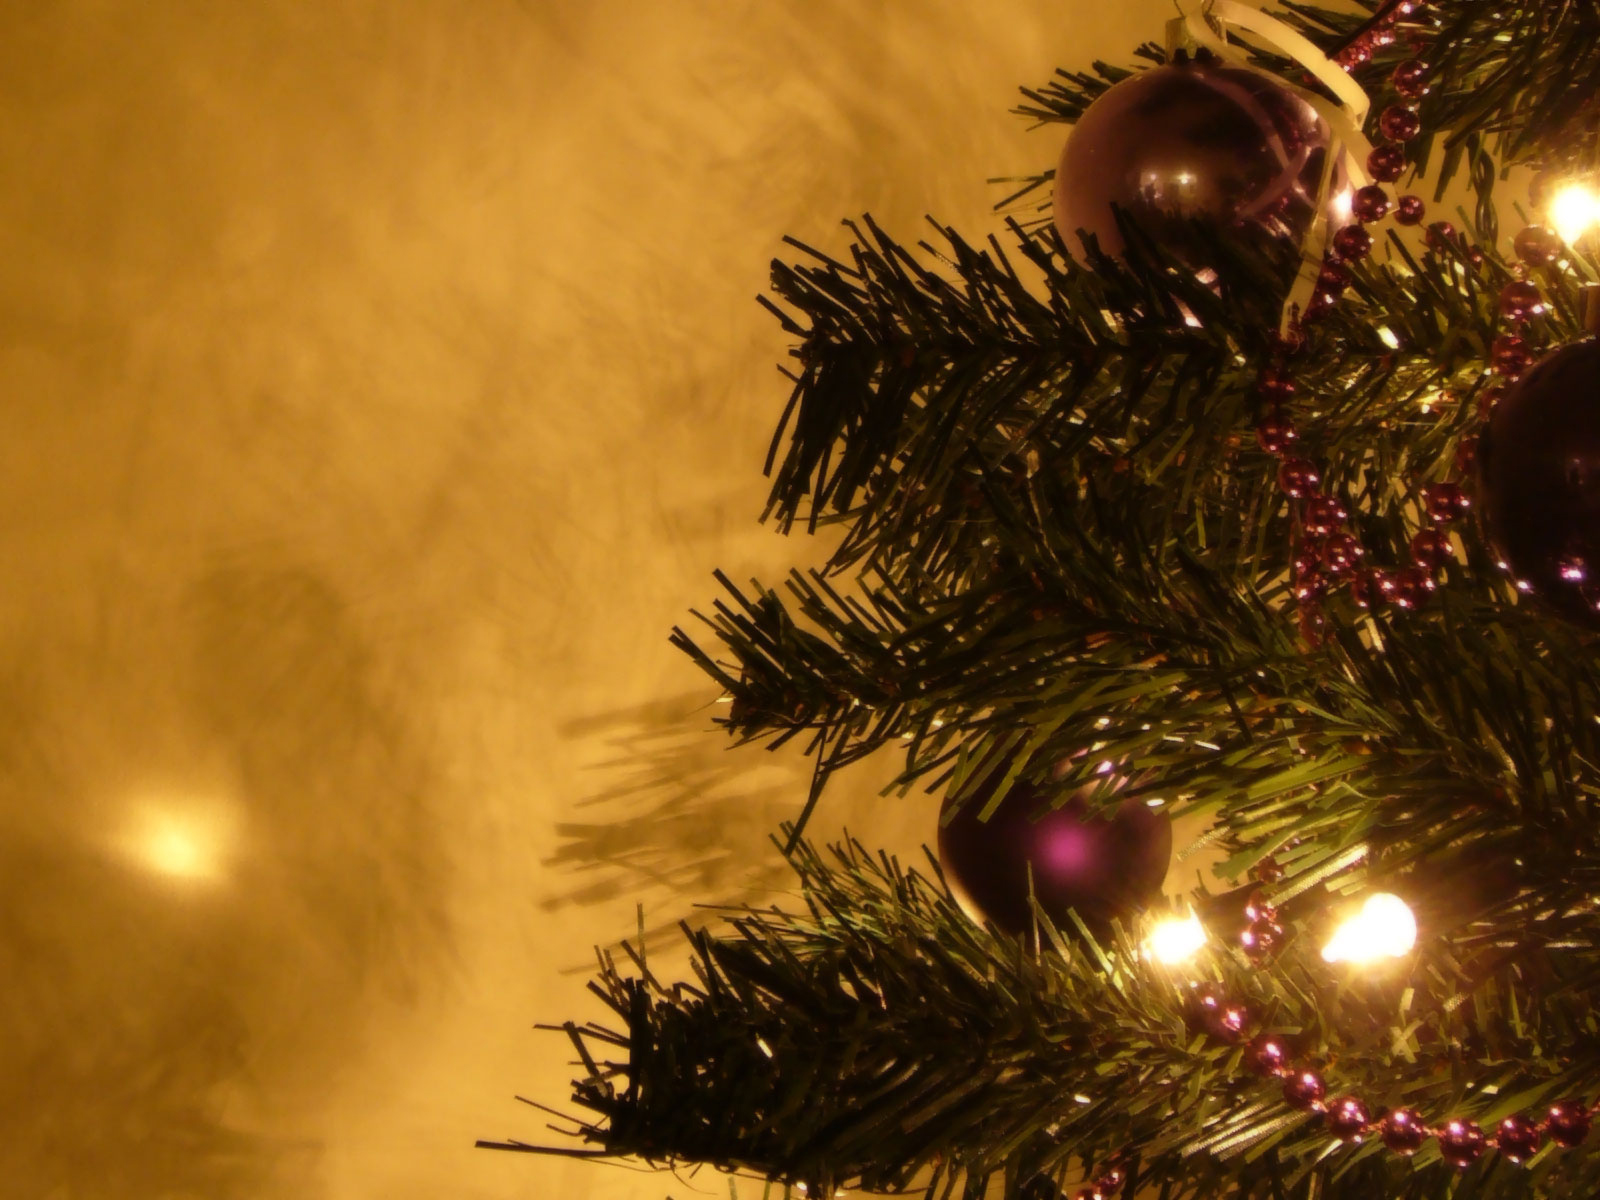 tapeten hd weihnachten,weihnachtsschmuck,weihnachtsbaum,baum,weihnachtsdekoration,weihnachten